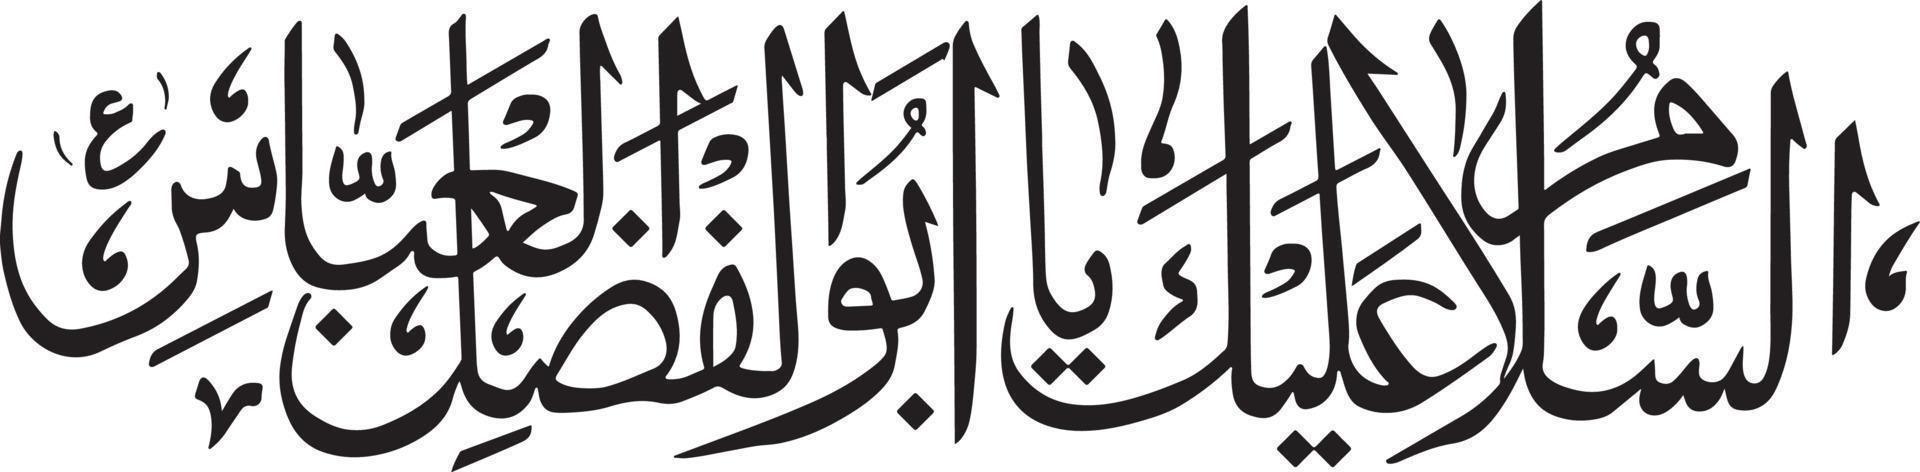 salam islamische urdu kalligraphie kostenloser vektor